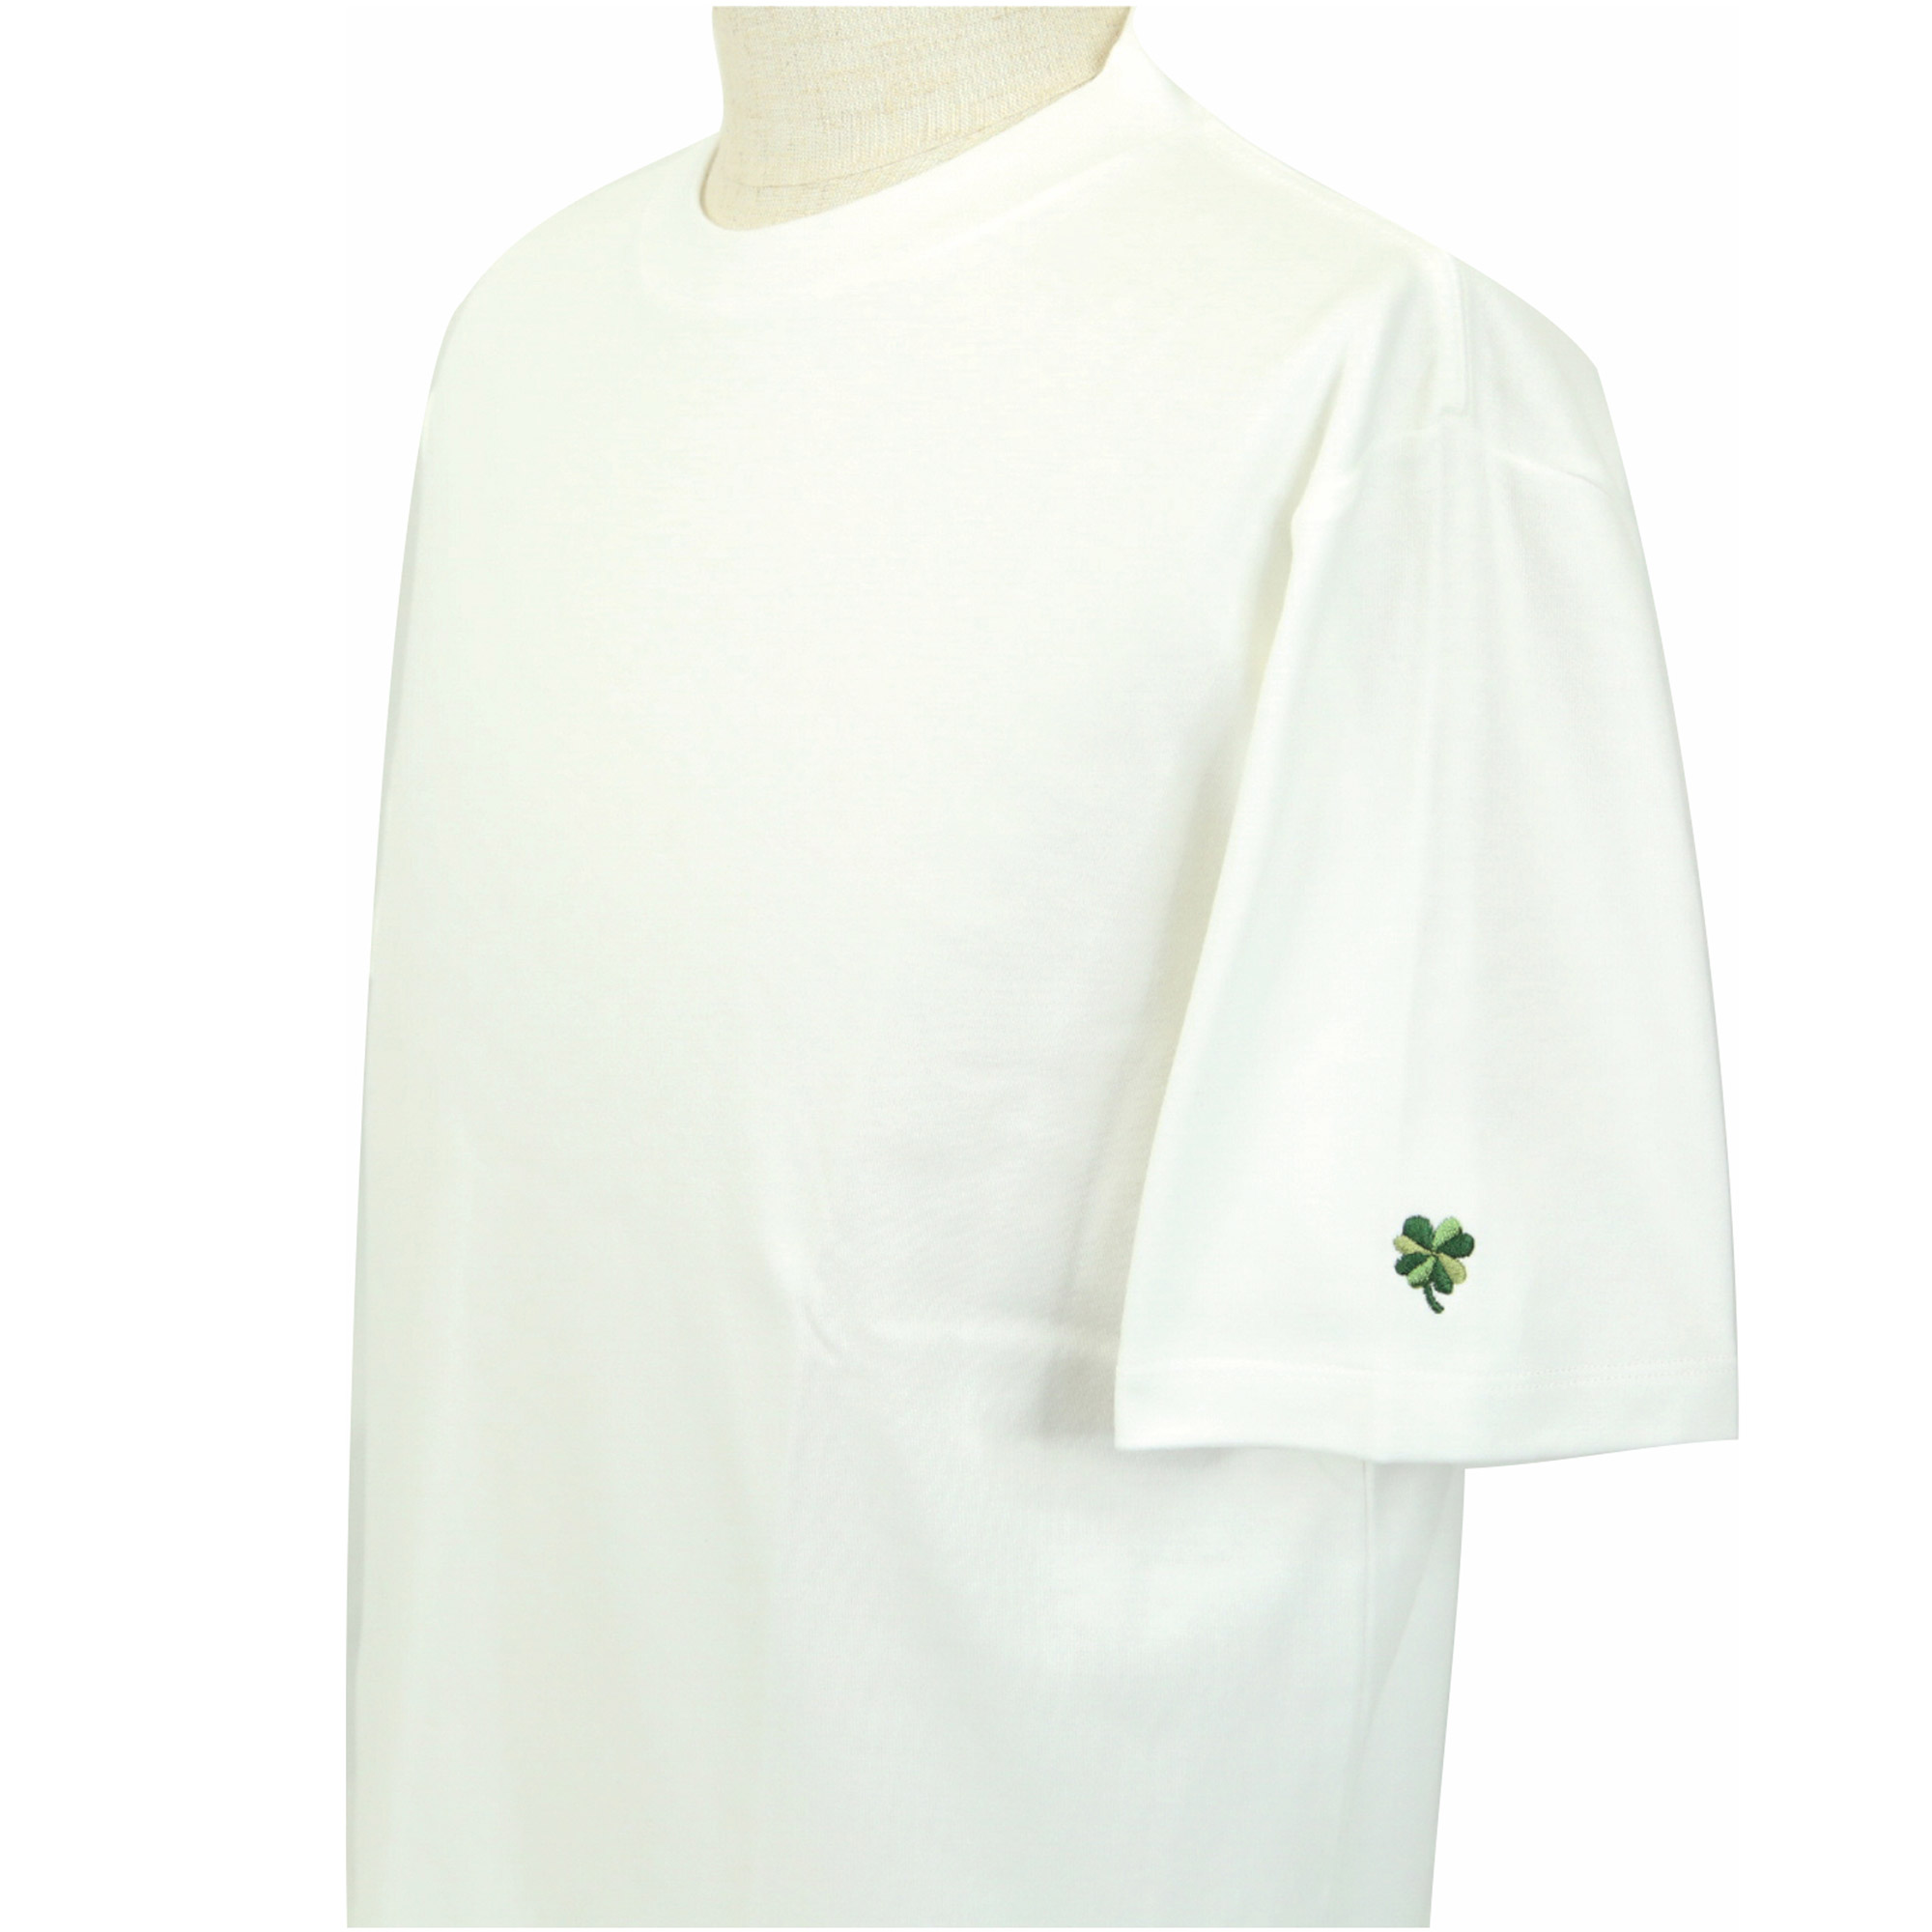 【値下げしました】プレミアムドレス Tシャツ  半袖  袖口刺繍  ホワイト  FATTURA  メンズファッション  日本製